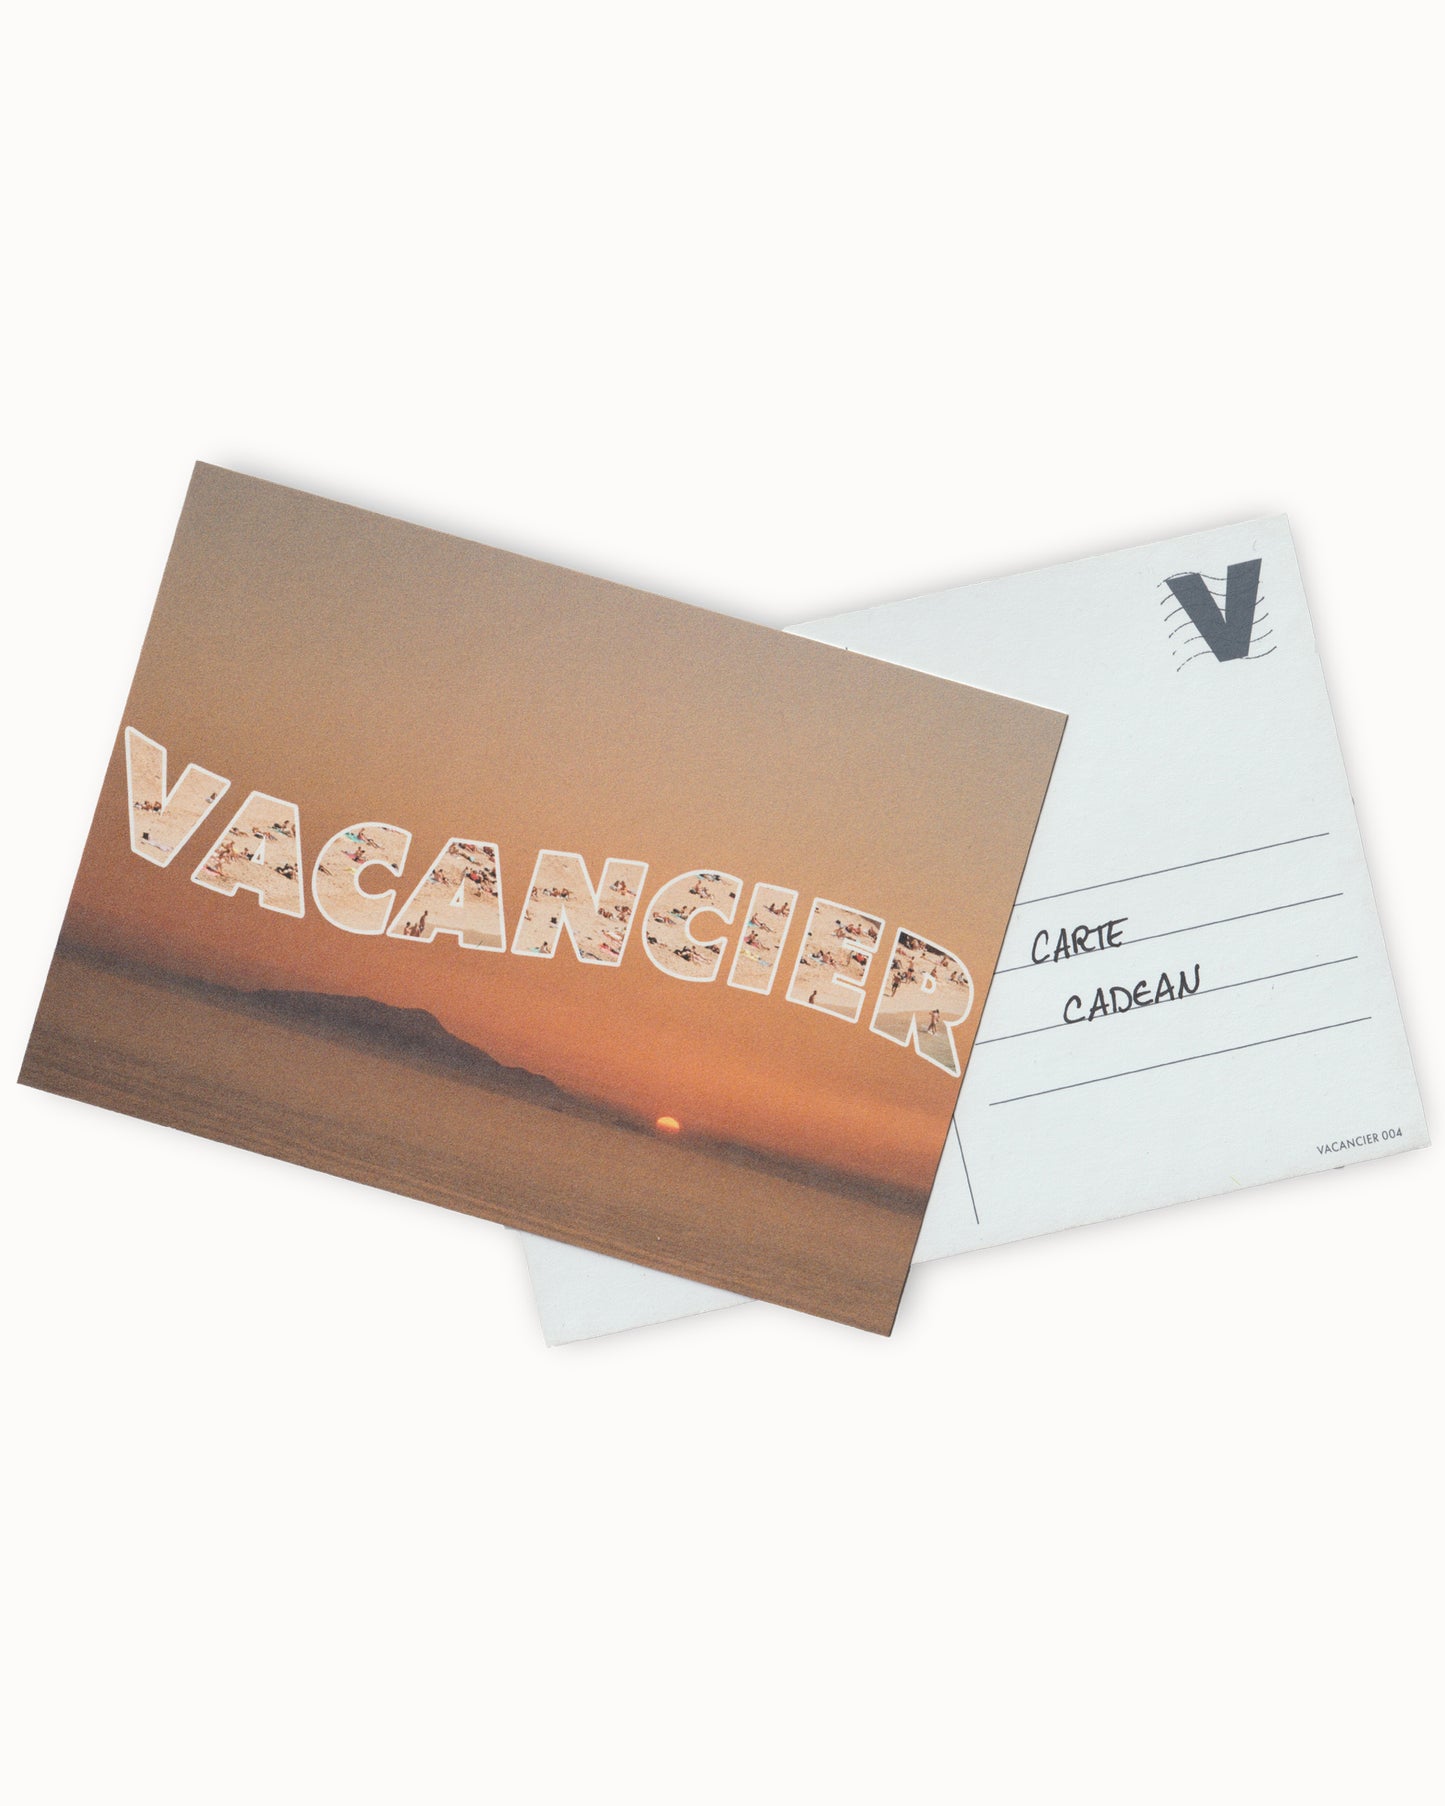 VACANCIER gift card ☀︎